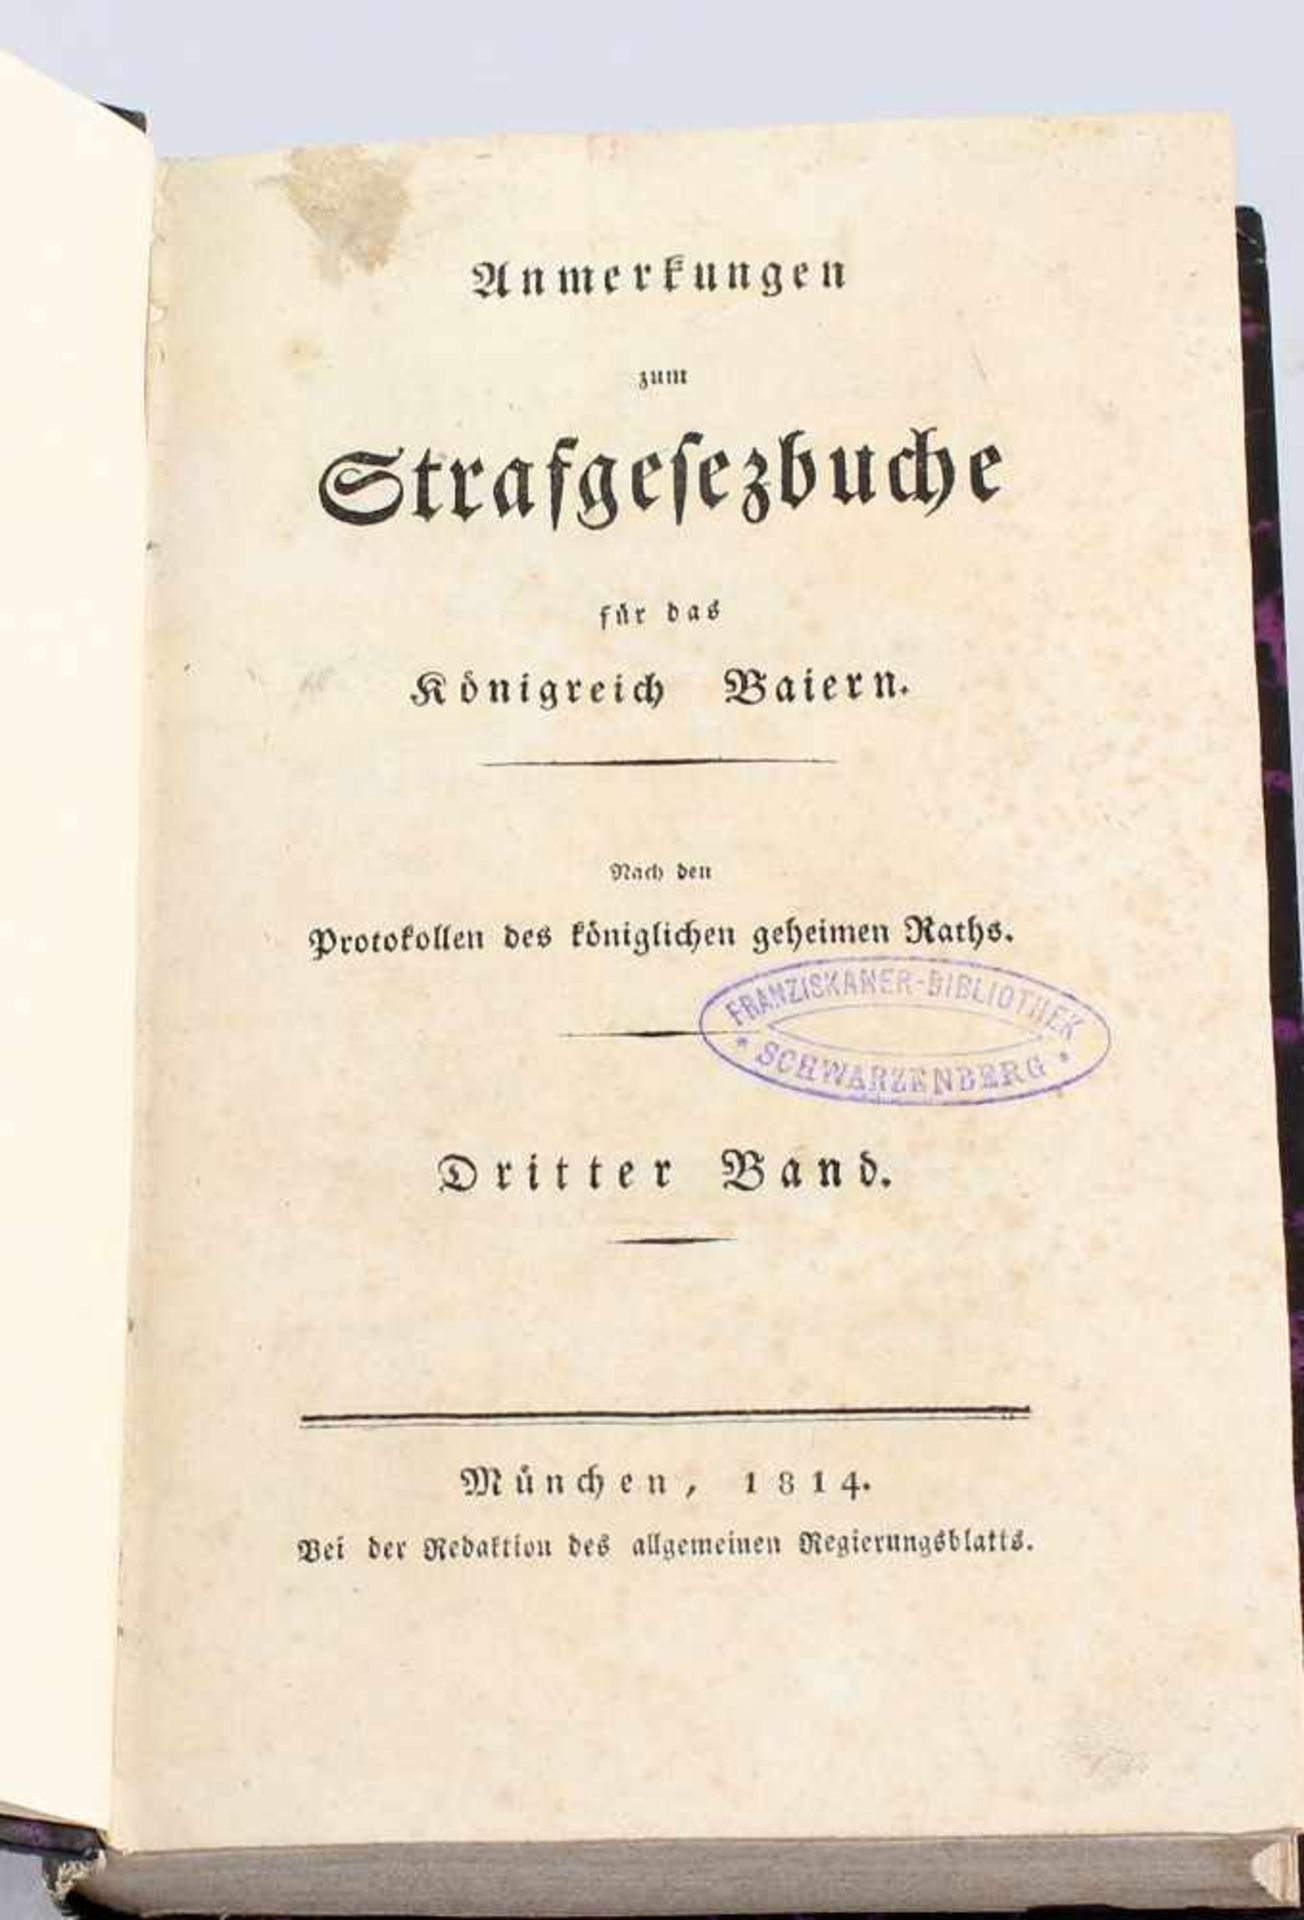 Anmerkungen zum Strafgesezbuche für das Königreich Baiern 1814nach den Protokollen des königlichen - Bild 2 aus 2